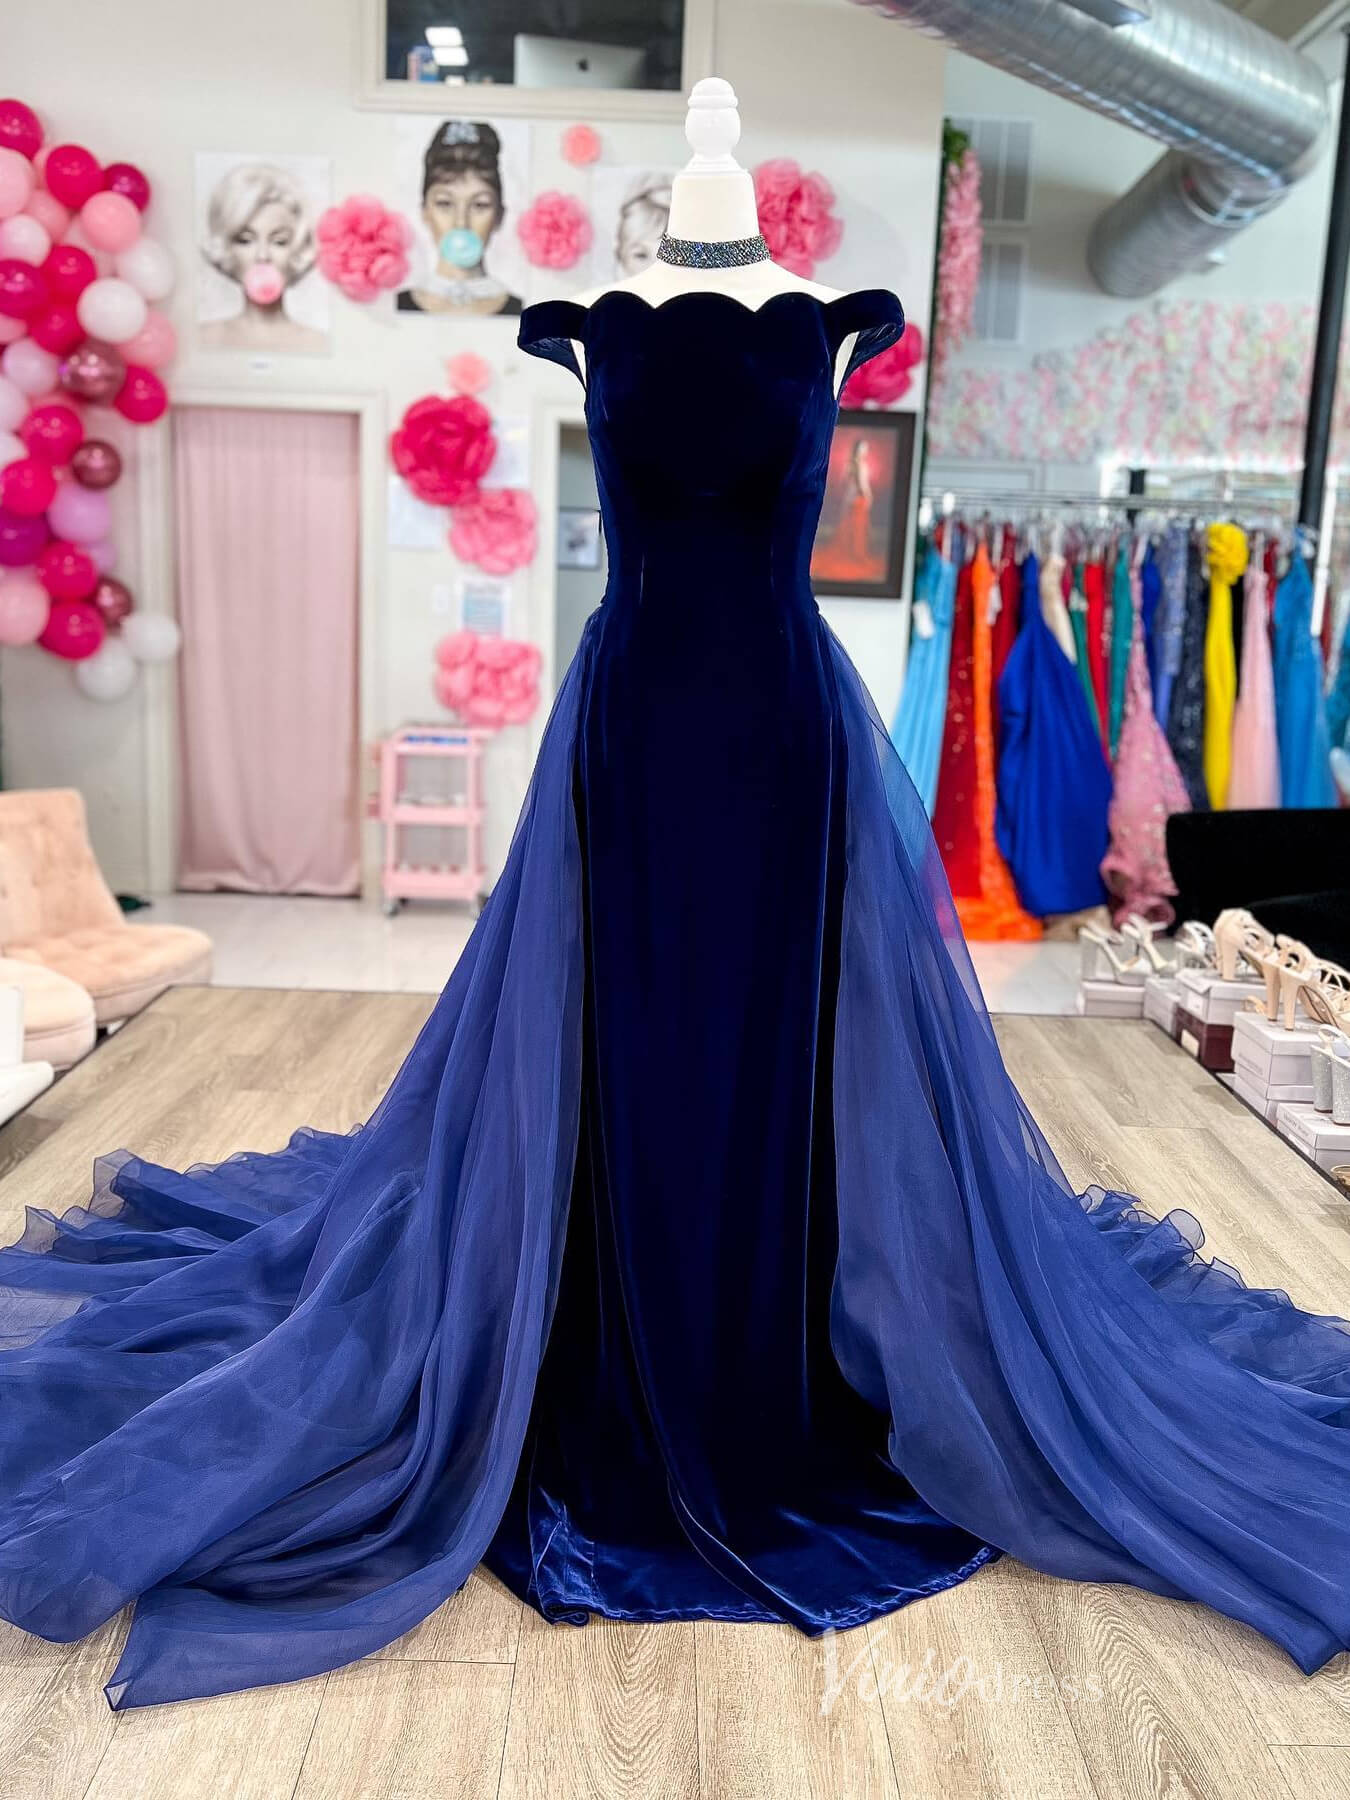 Navy Blue Velvet Mermaid Prom Dresses Organza Overskirt Off the Shoulder FD4056-prom dresses-Viniodress-Viniodress